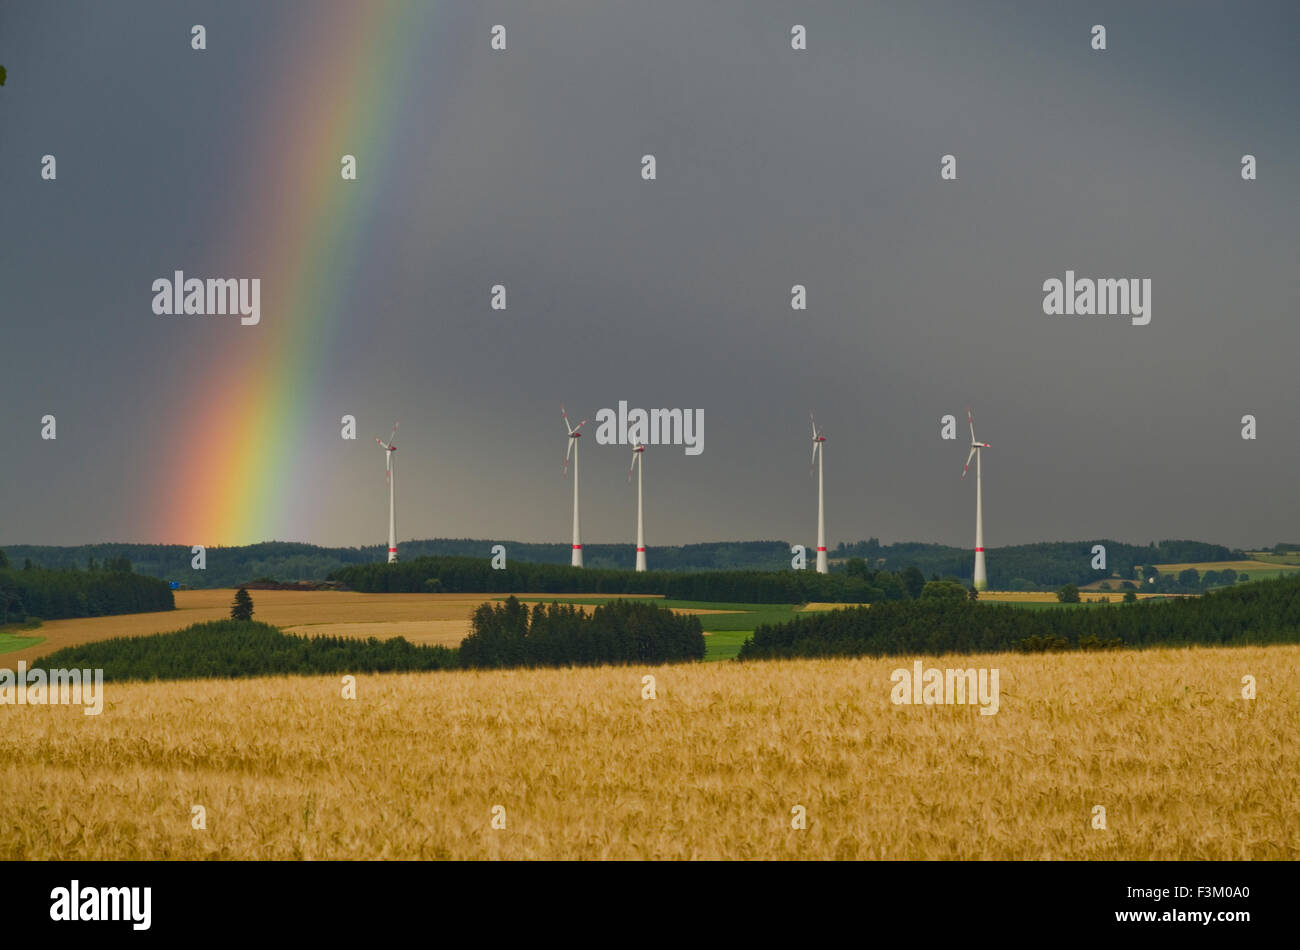 Les éoliennes derrière un grainfield avec ciel nuageux et rainbow Banque D'Images